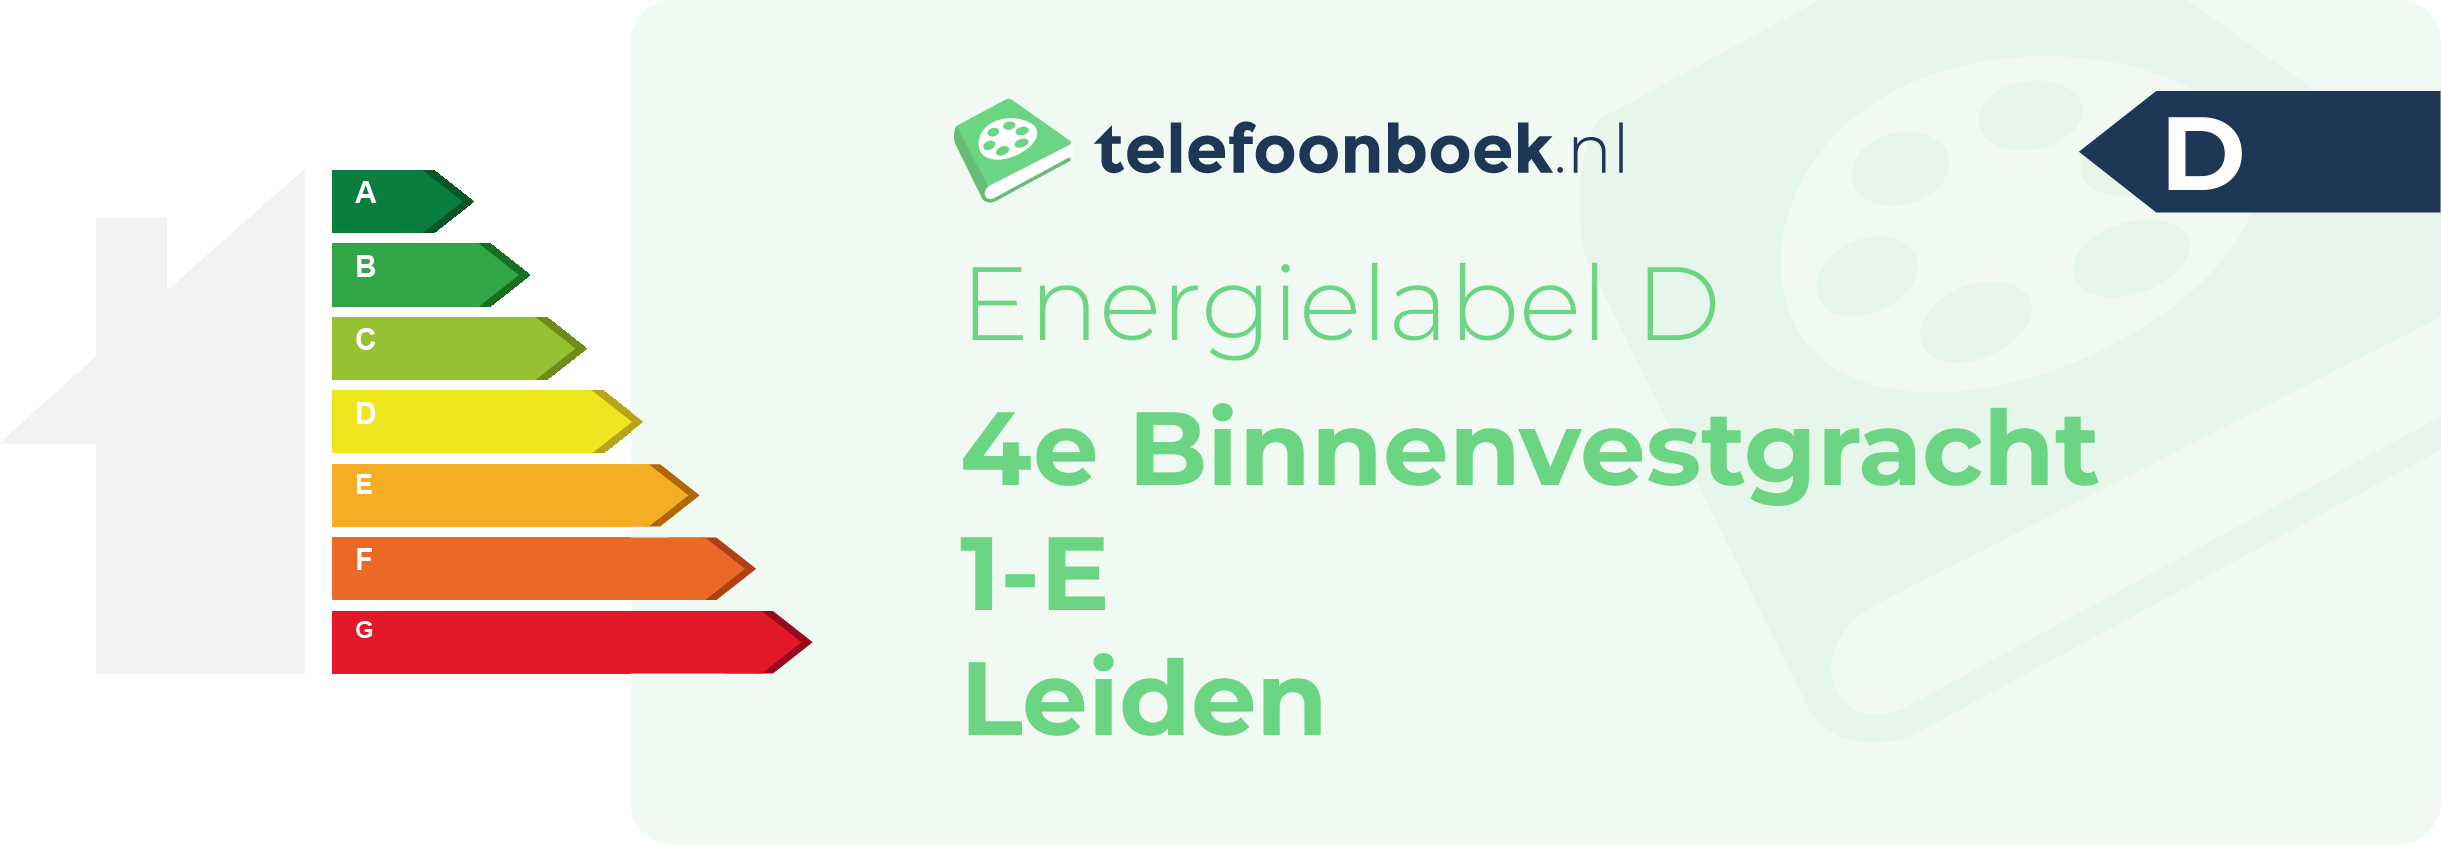 Energielabel 4e Binnenvestgracht 1-E Leiden